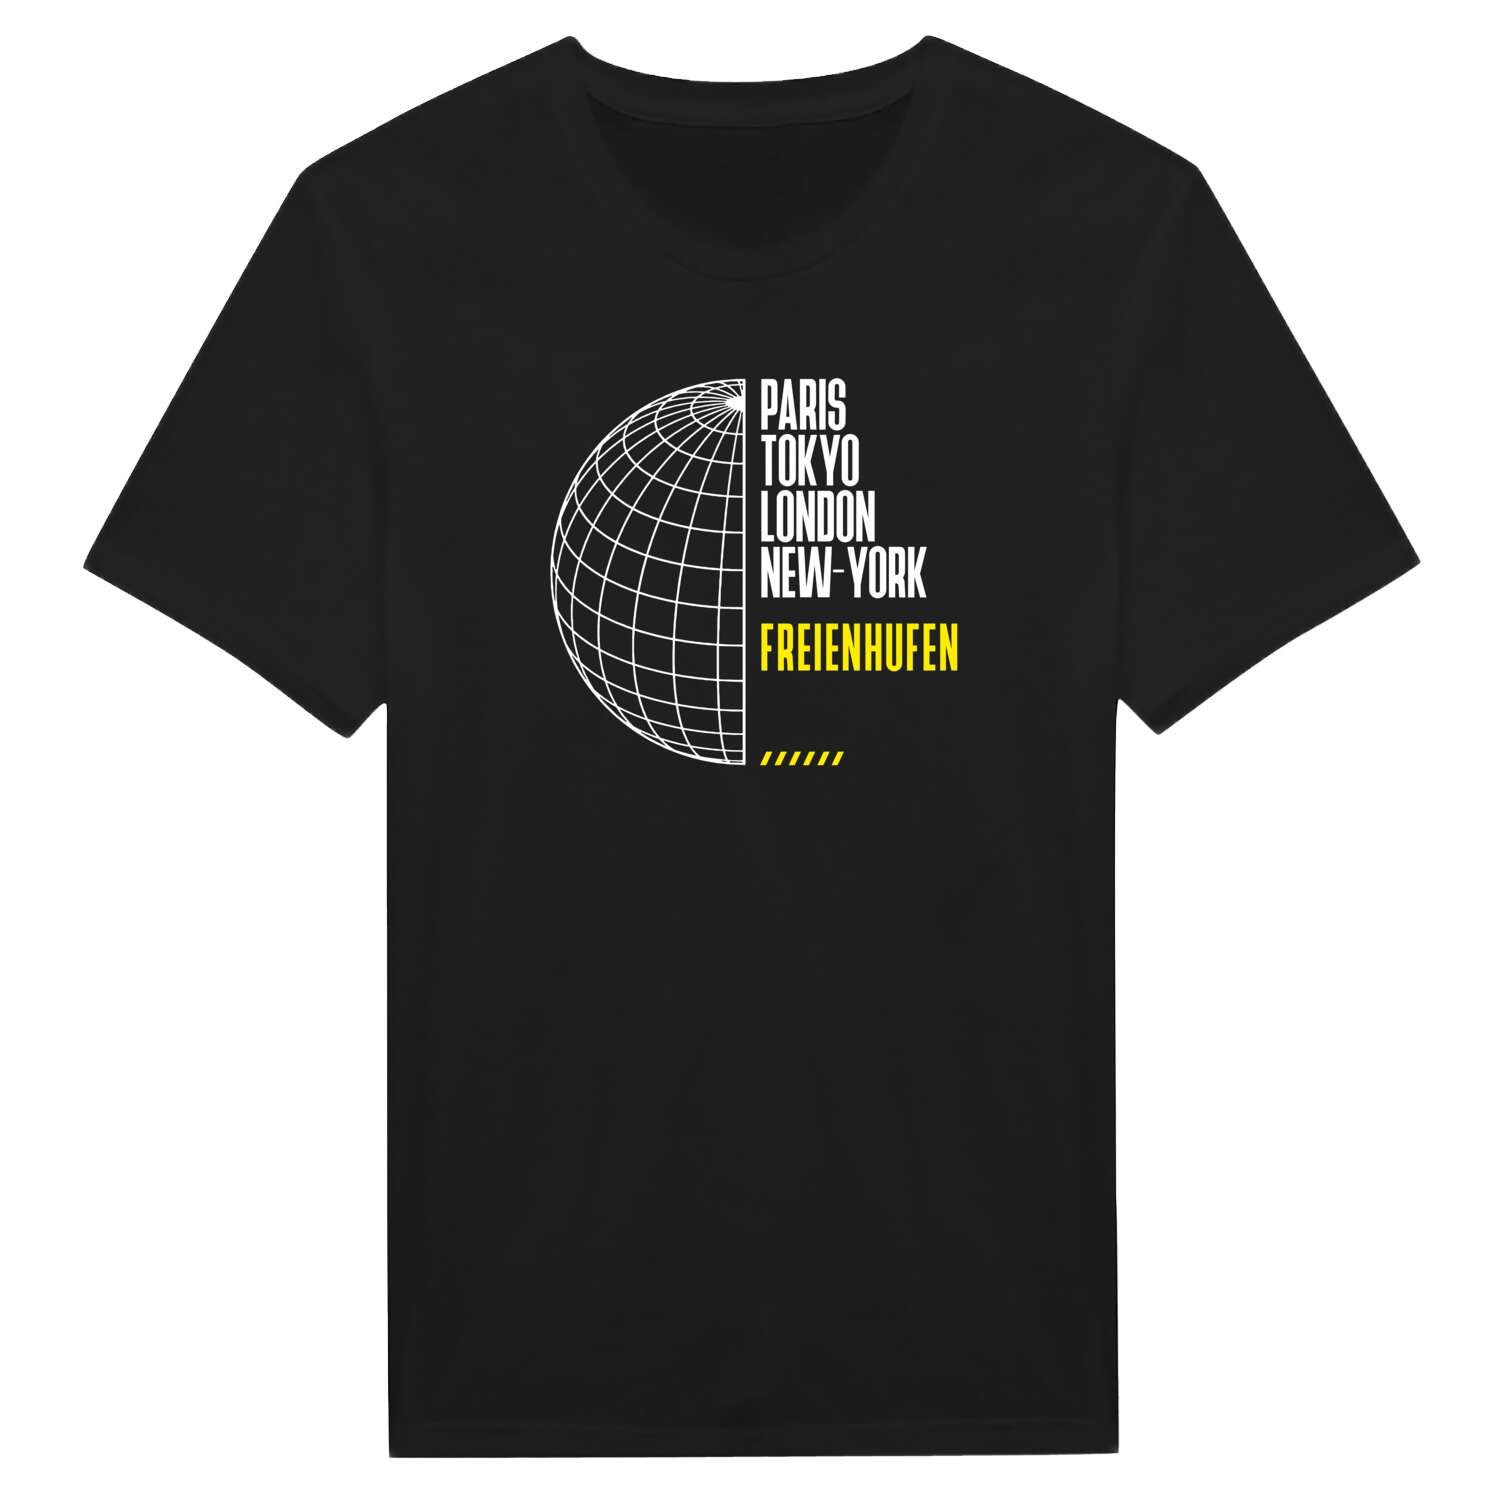 Freienhufen T-Shirt »Paris Tokyo London«